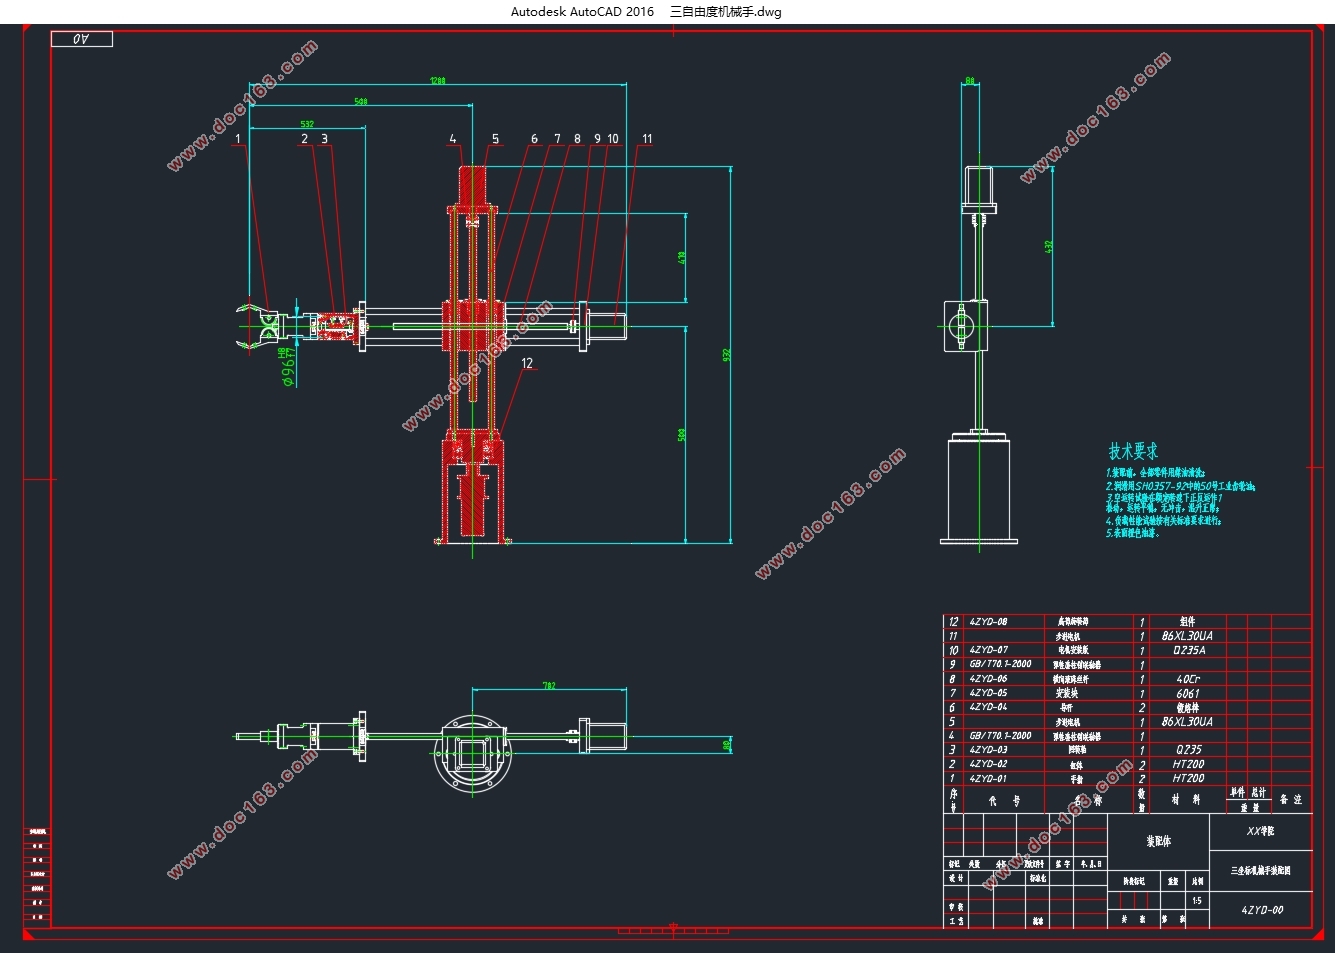 基于PLC三自由度机械手控制系统的设计(10kg负载)(含CAD零件图装配图)